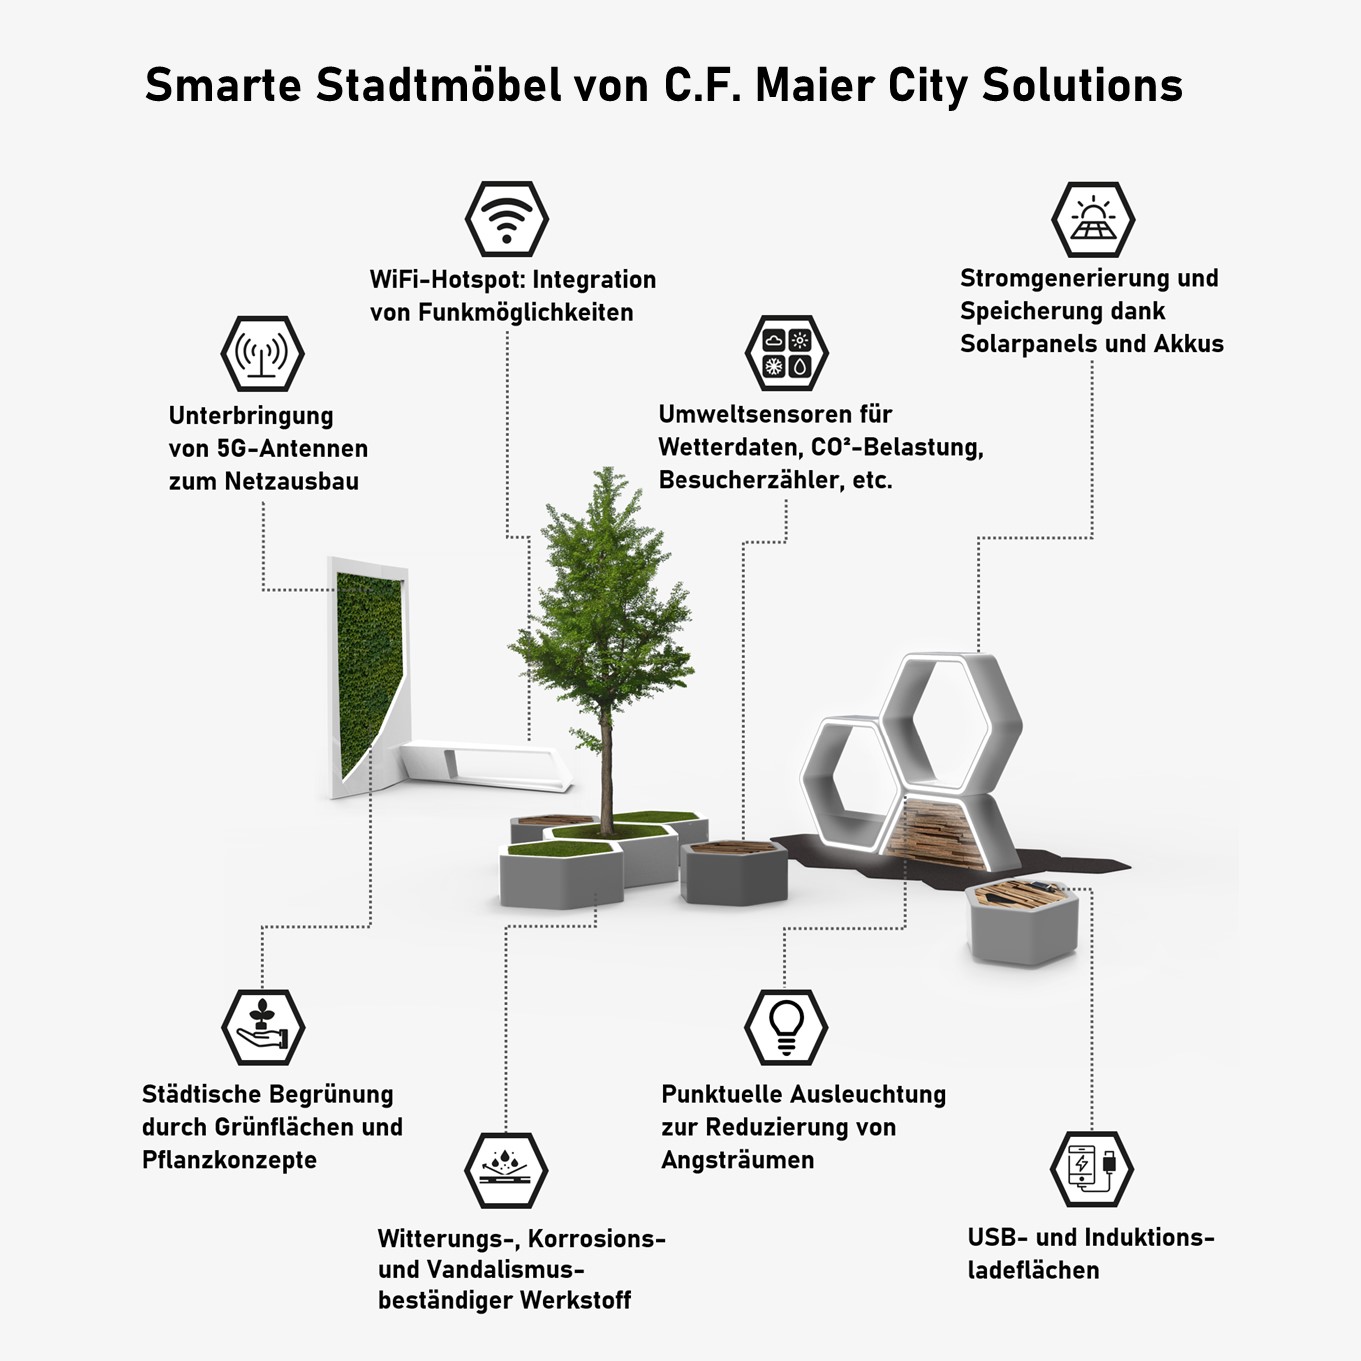 Das Konzept der smarten Stadtmöbel von C.F. Maier City Solutions